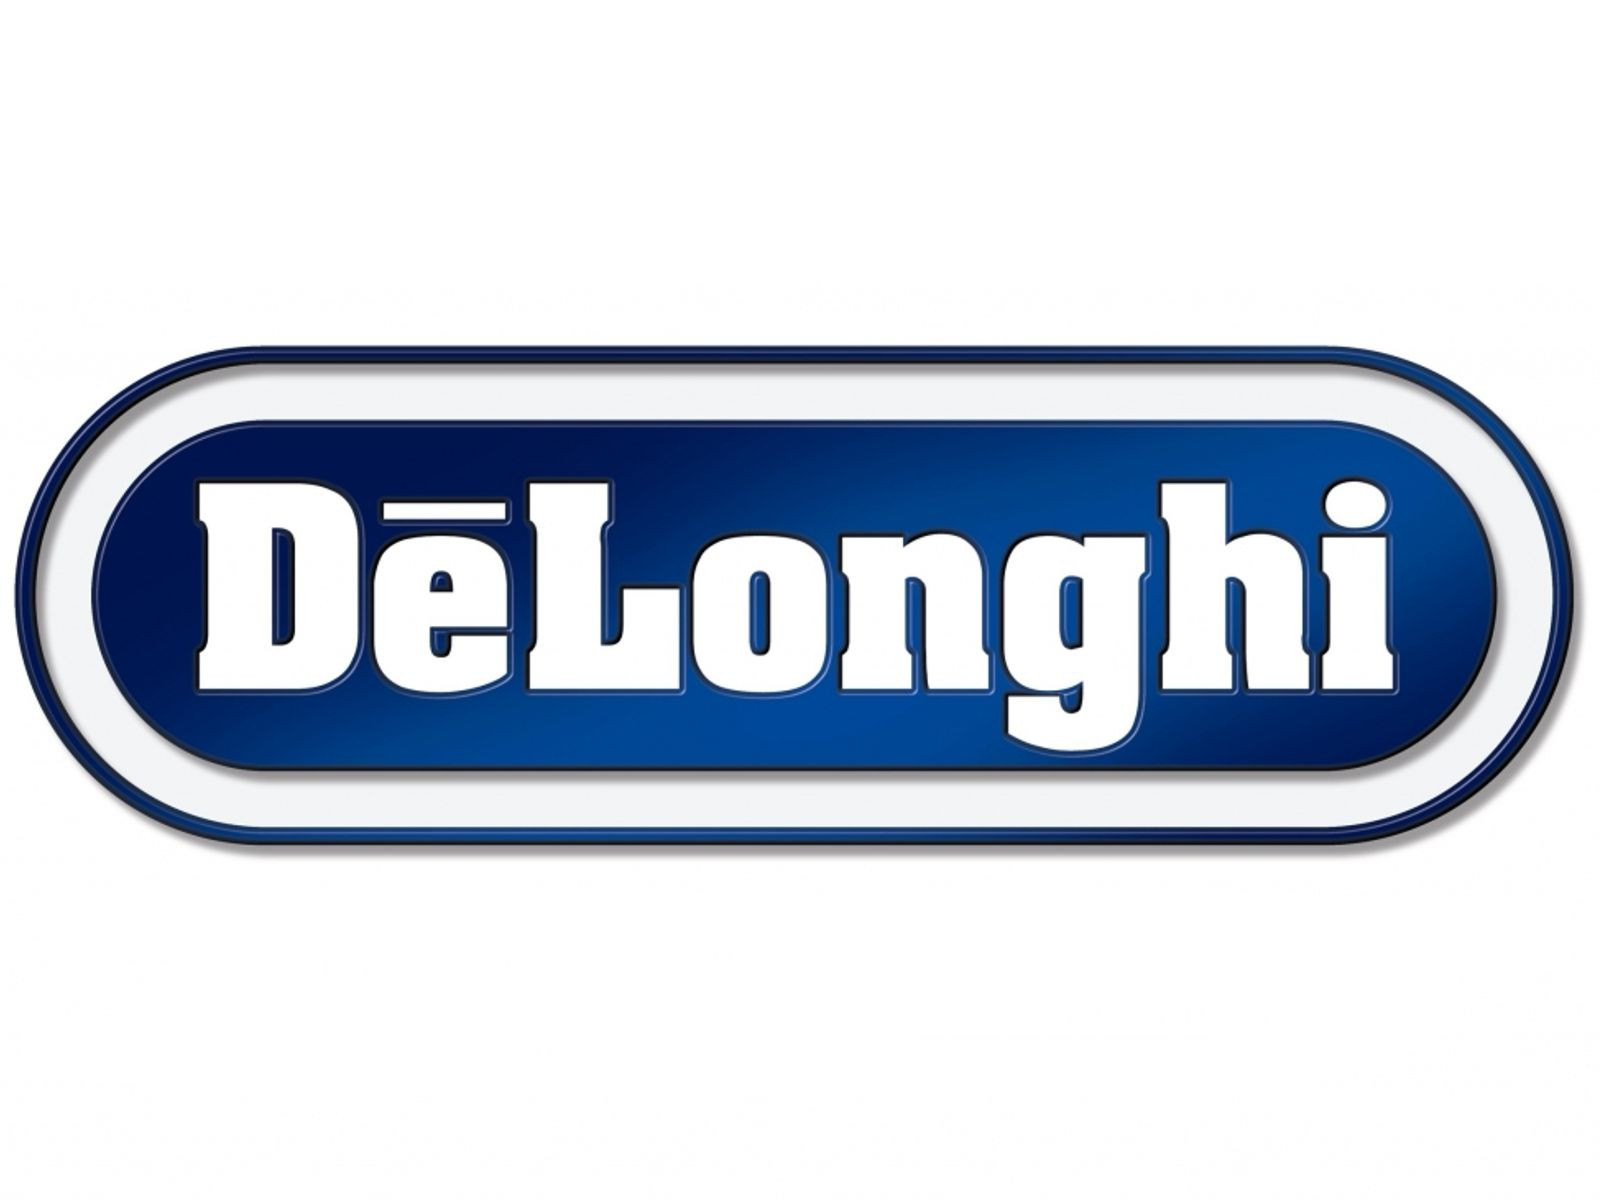 Delonghi